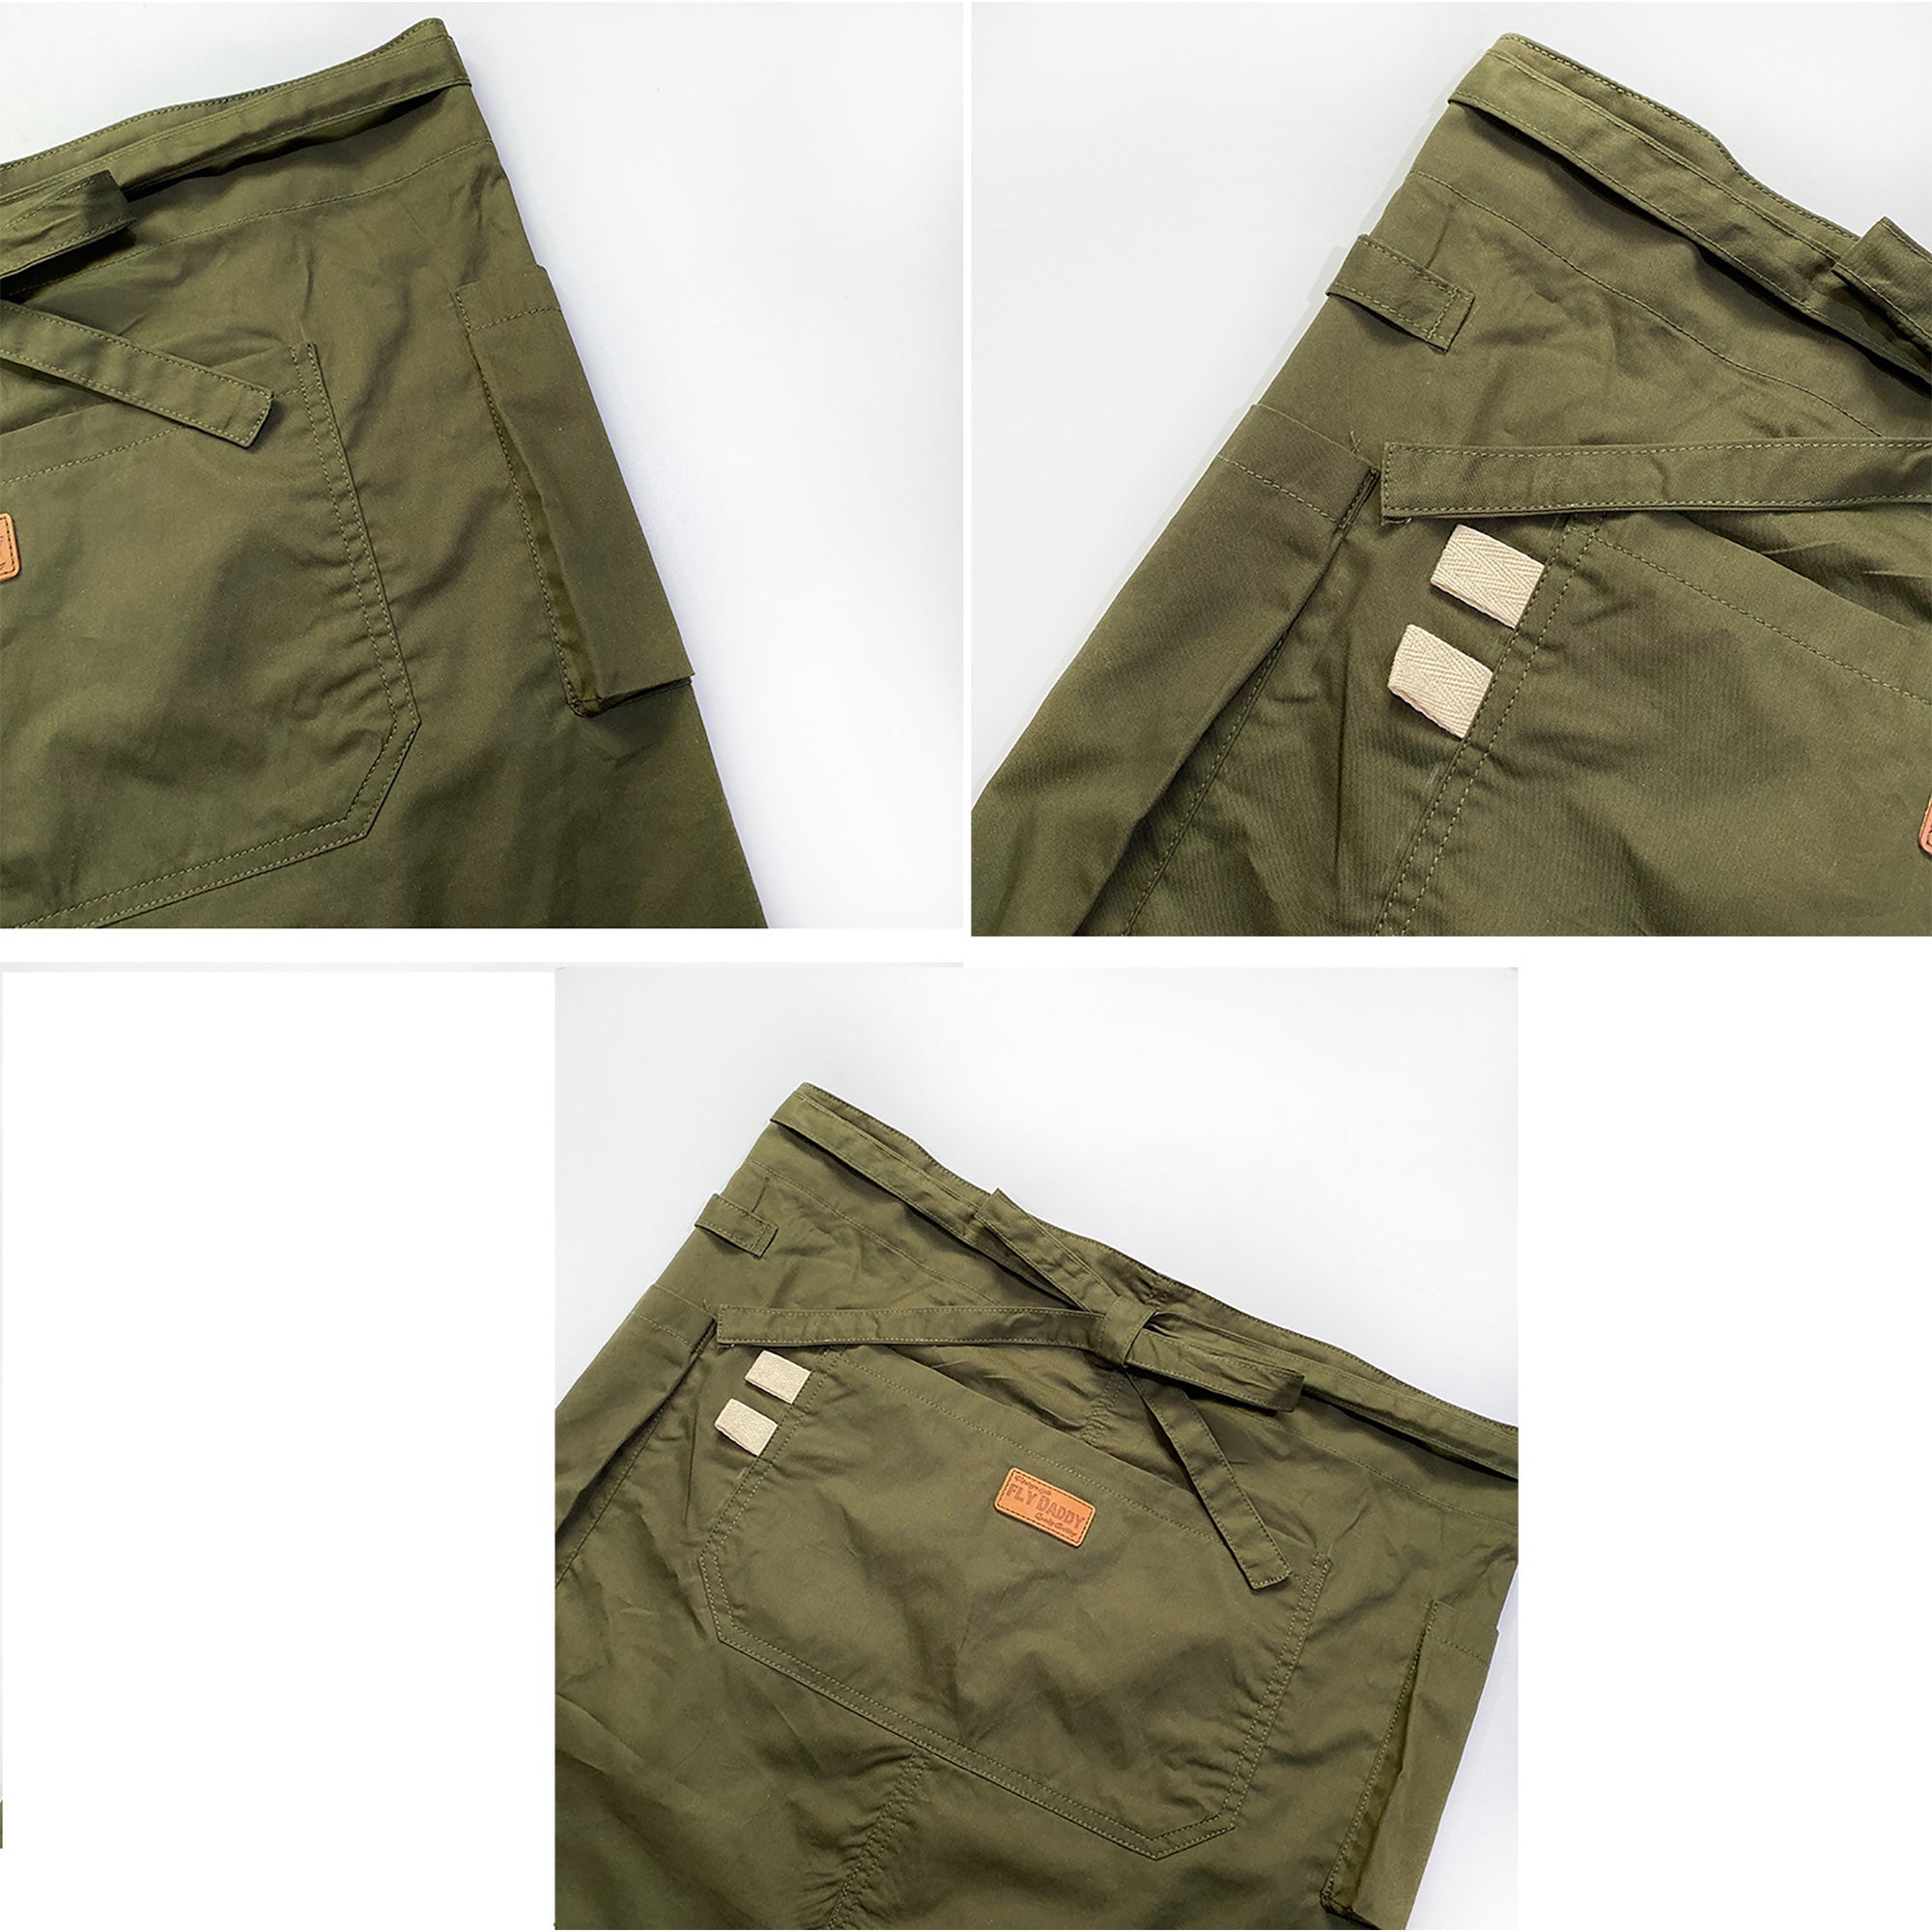 Unisex 2 style （Long + Short) Uniform Apron